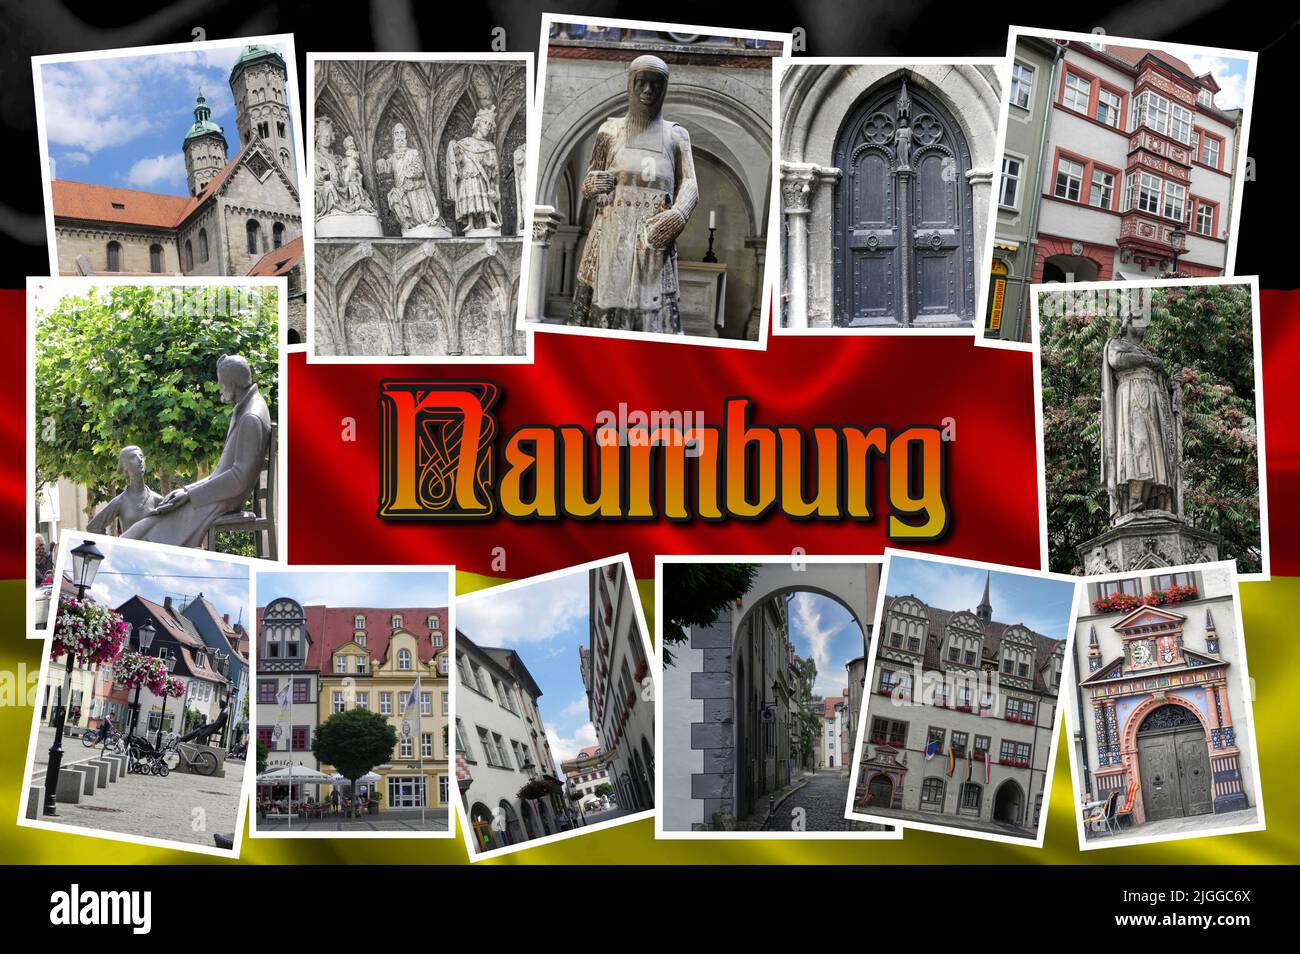 Naumburg est une belle et ancienne ville d'Allemagne, située dans le pays de Saxe-Anhalt, pleine de monuments et de lieux d'intérêt historique. Banque D'Images